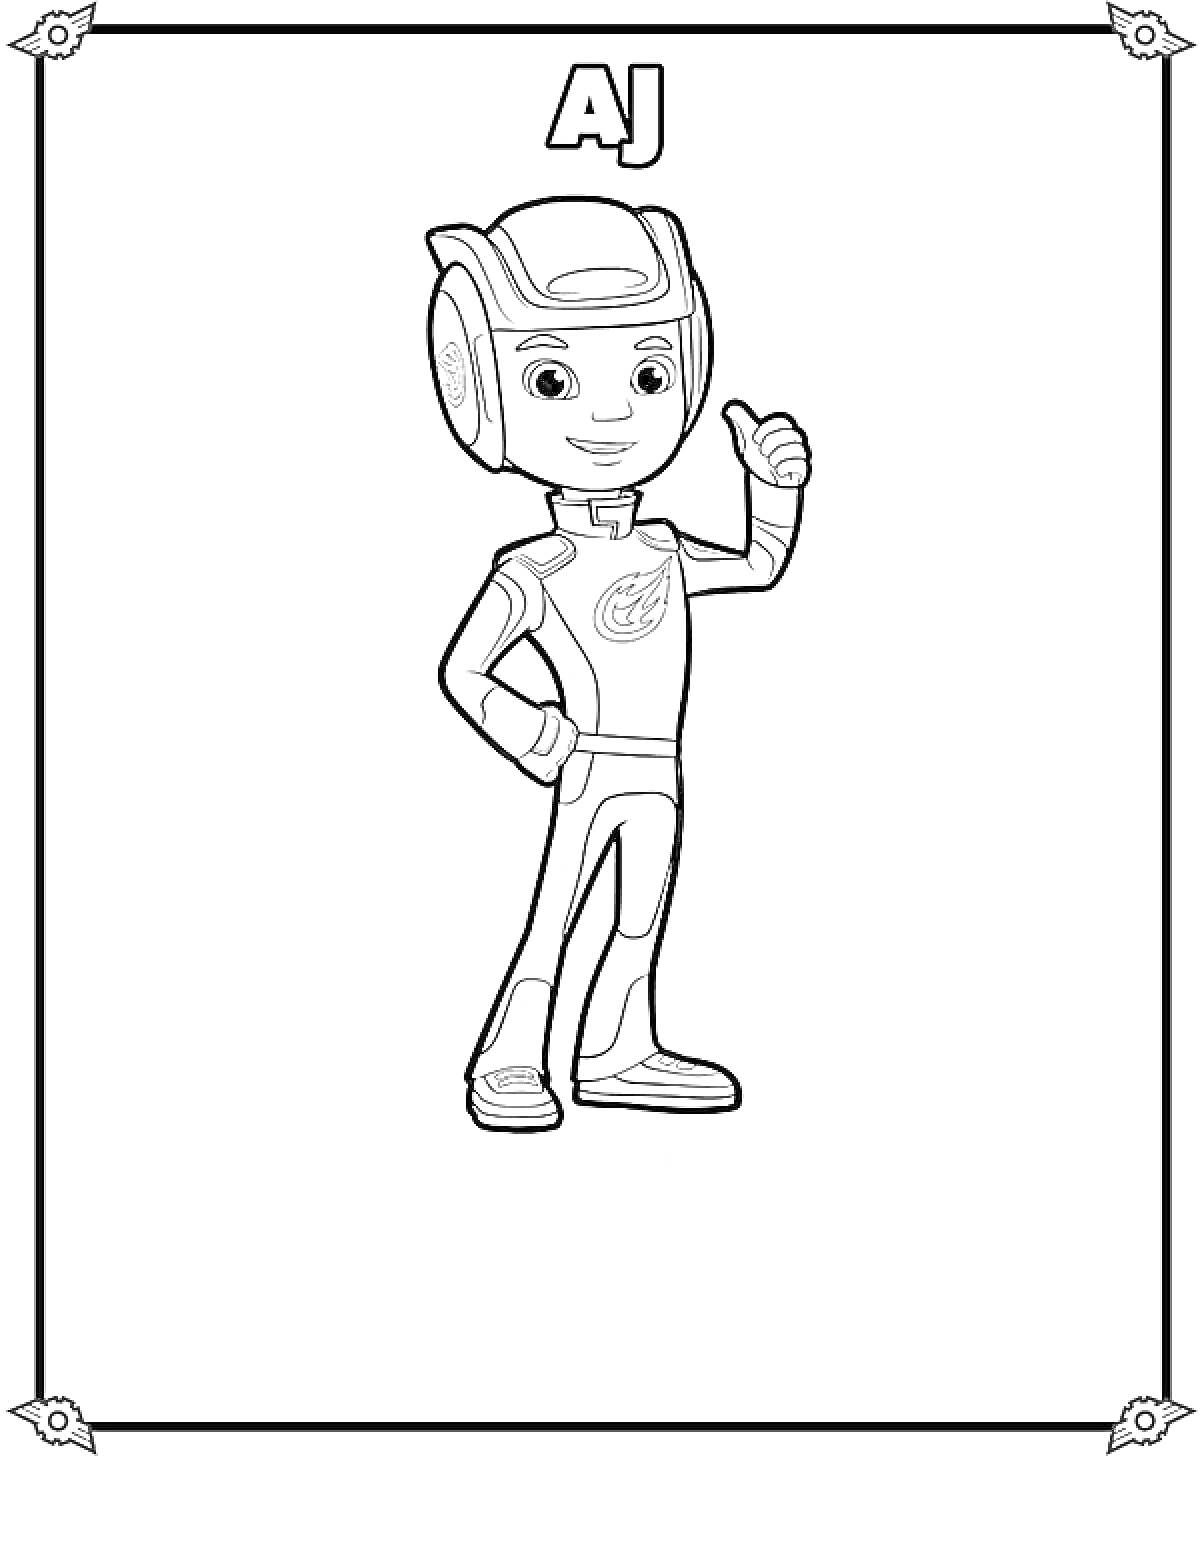 Раскраска AJ, персонаж в шлеме и гоночном костюме